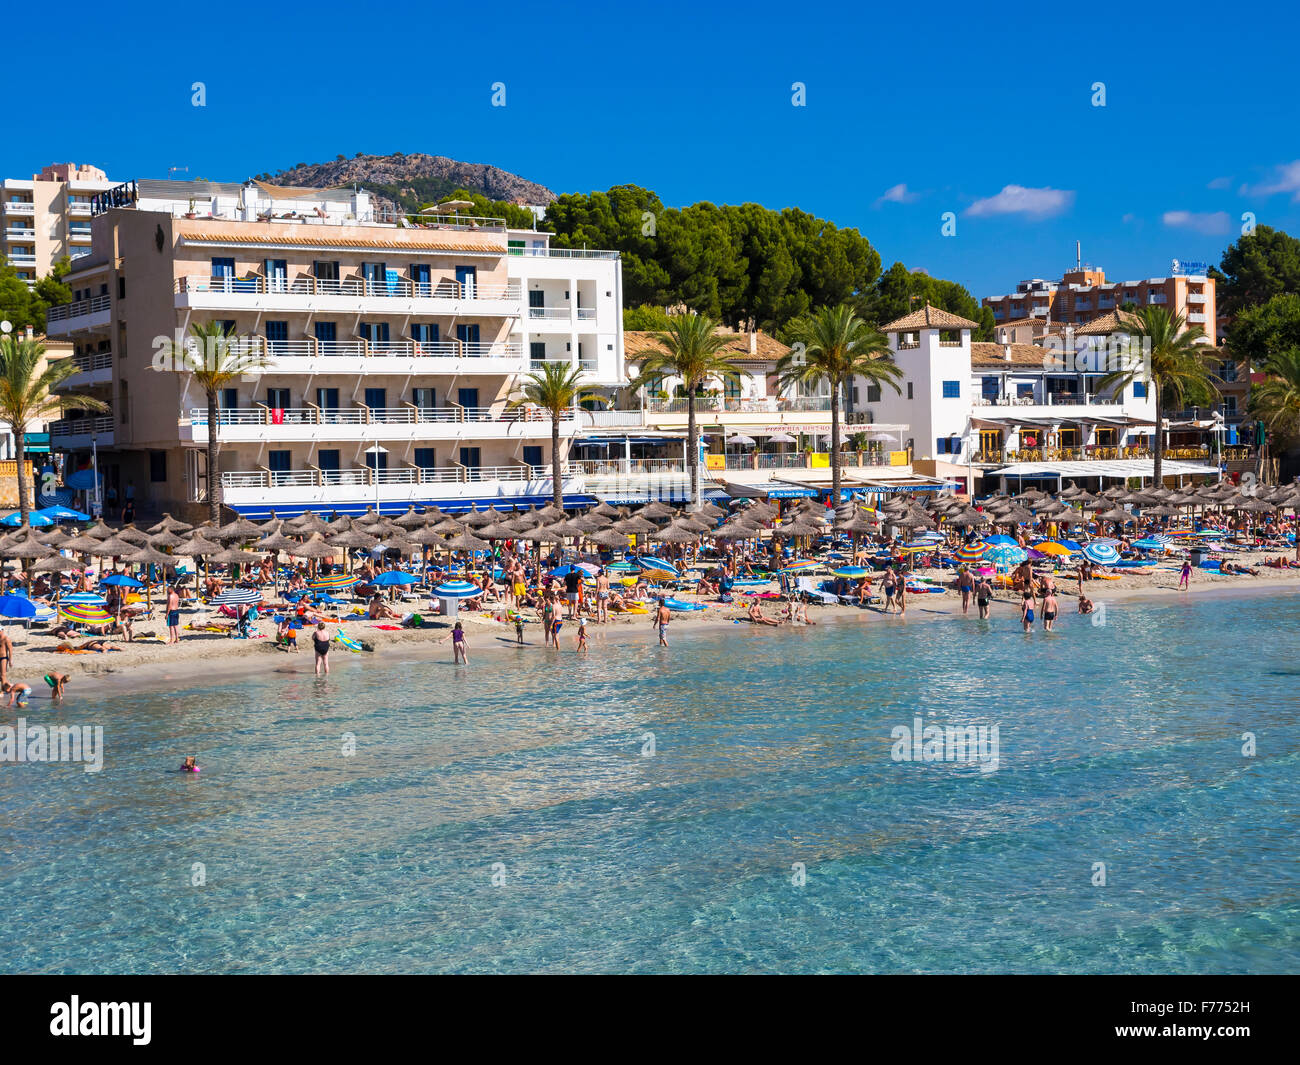 La plage animée de Peguera, Majorque, Îles Baléares, Espagne Banque D'Images